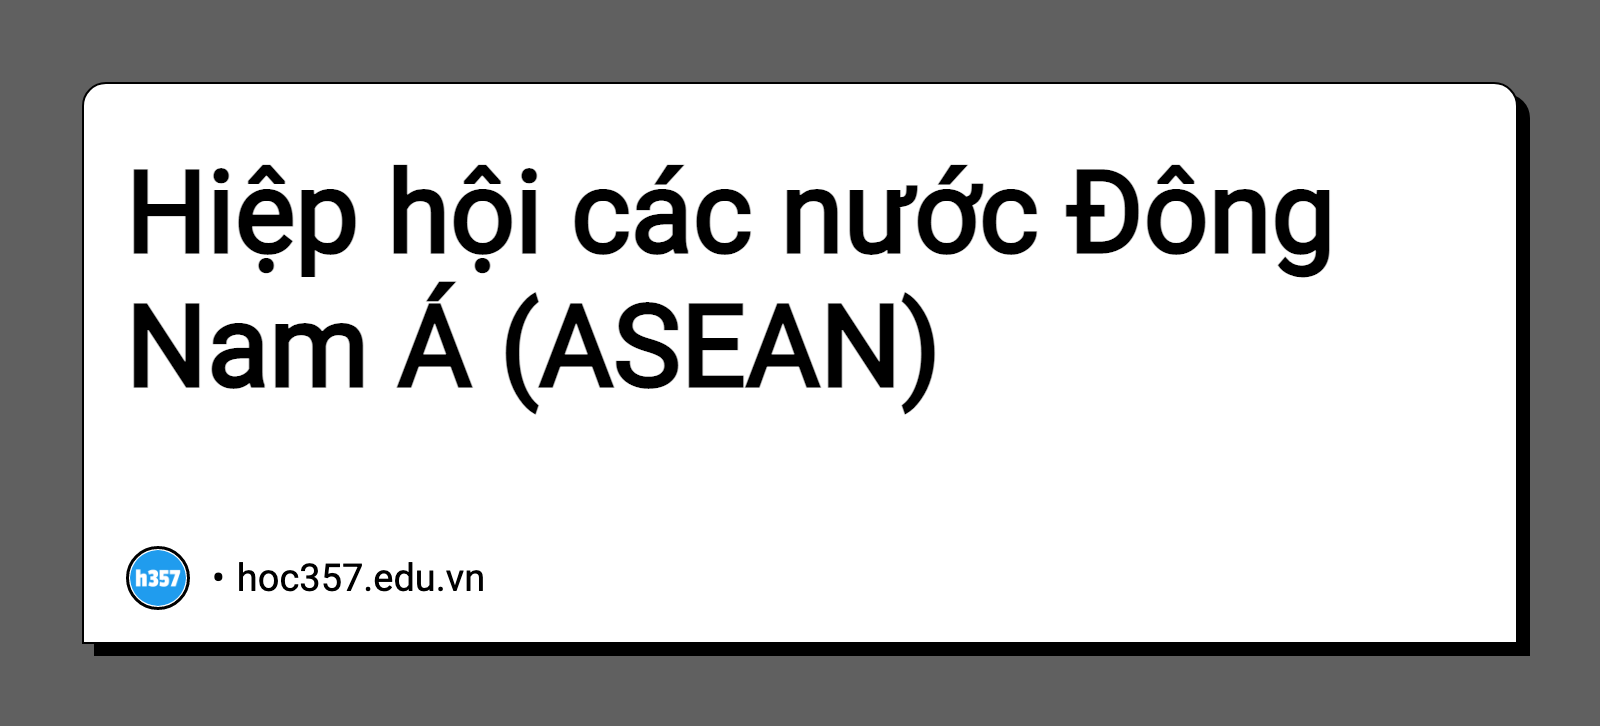 Hình minh họa Hiệp hội các nước Đông Nam Á (ASEAN)